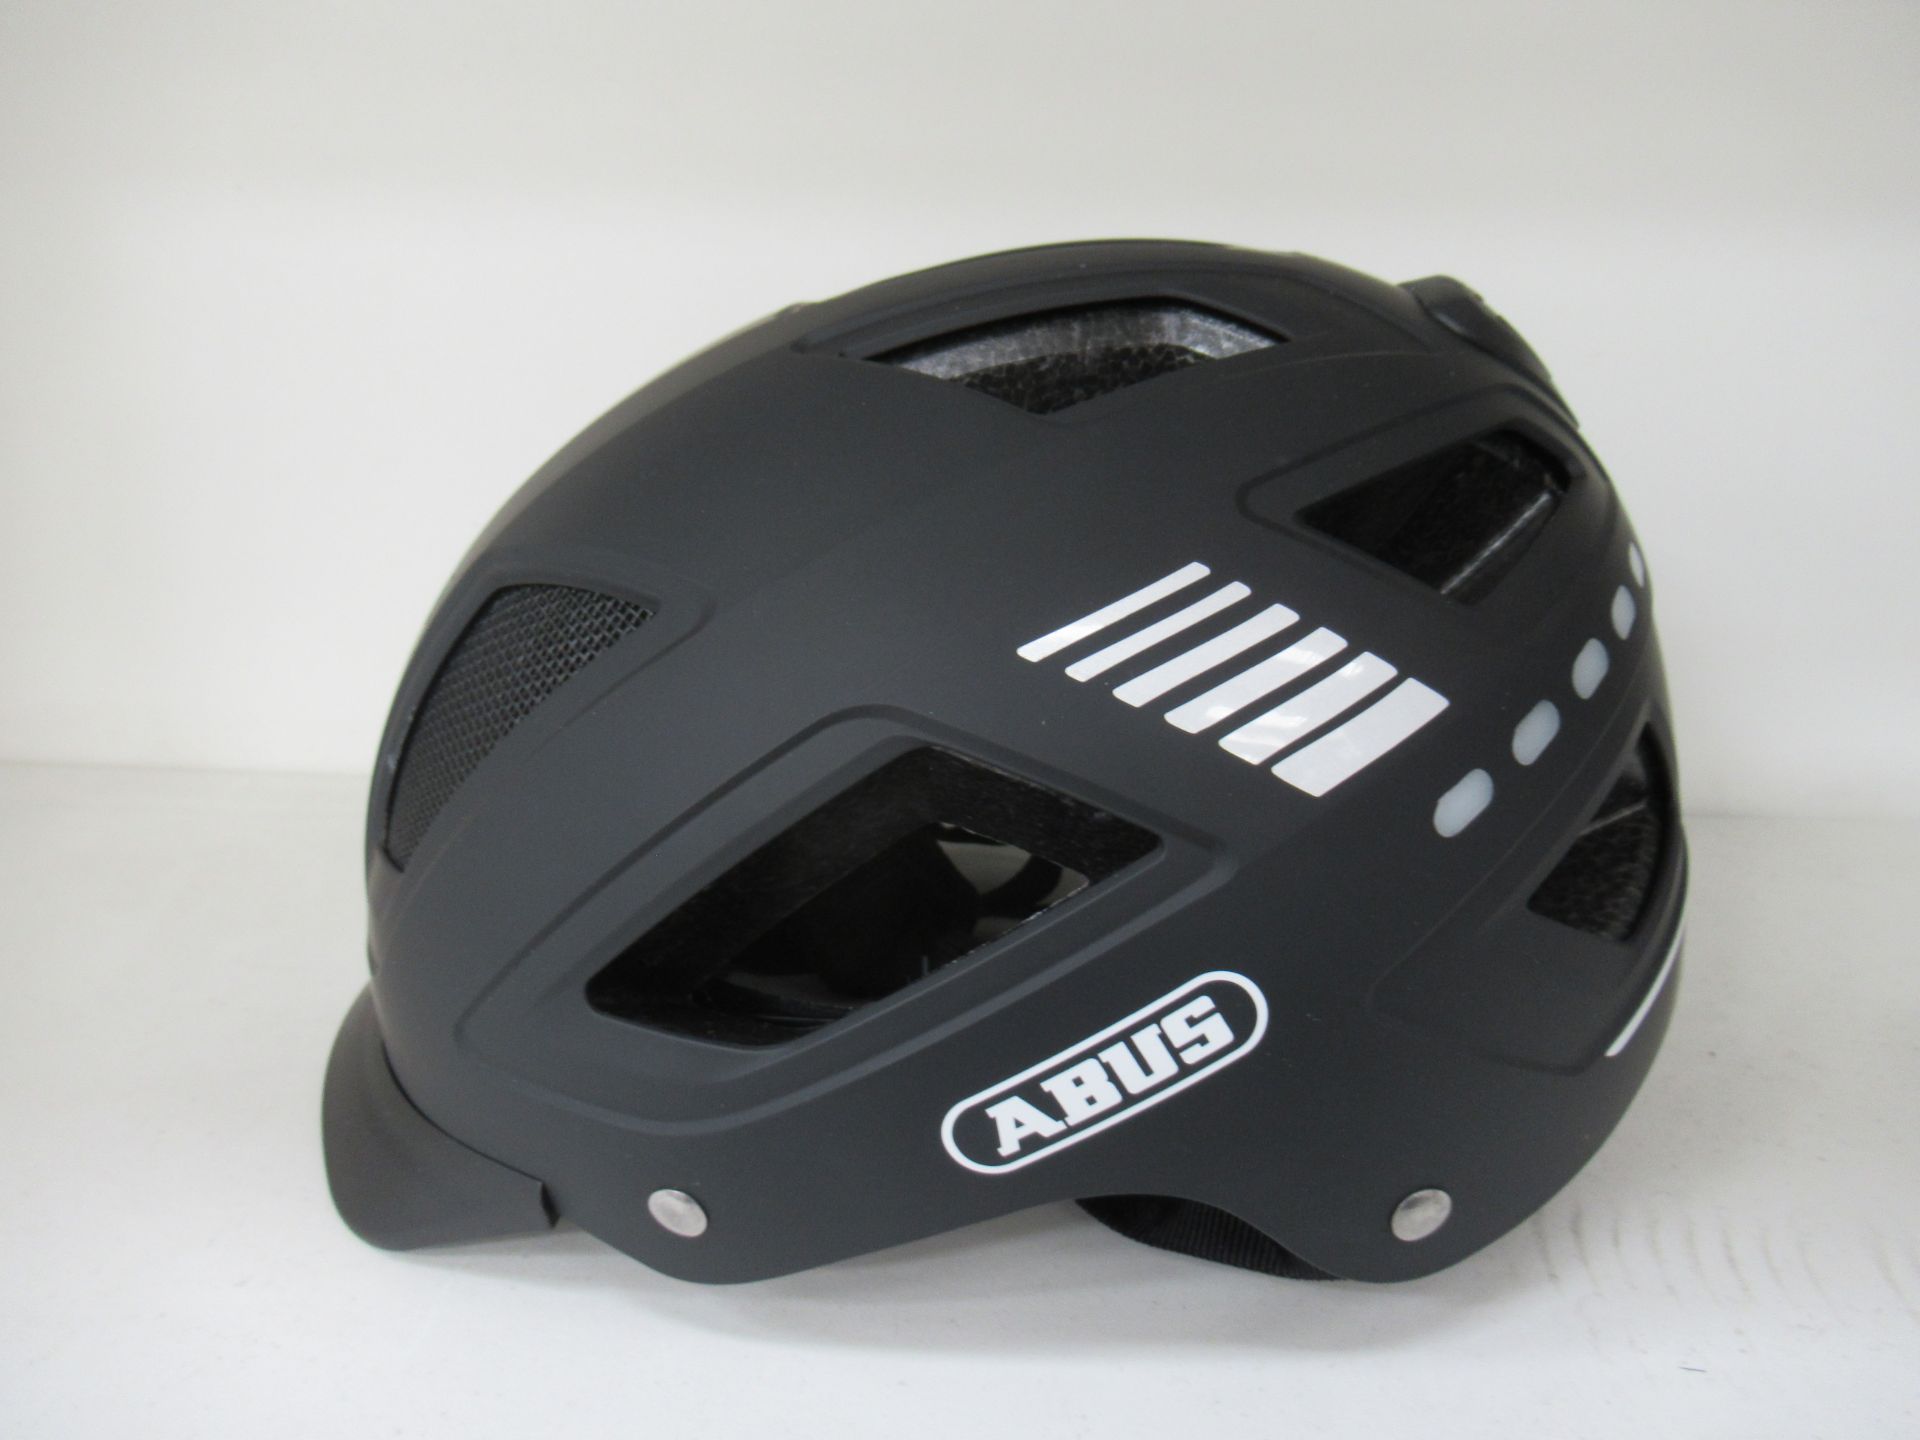 ABUS Hyban 2.0 LED black large sized helmet - boxed (RRP£114.99)